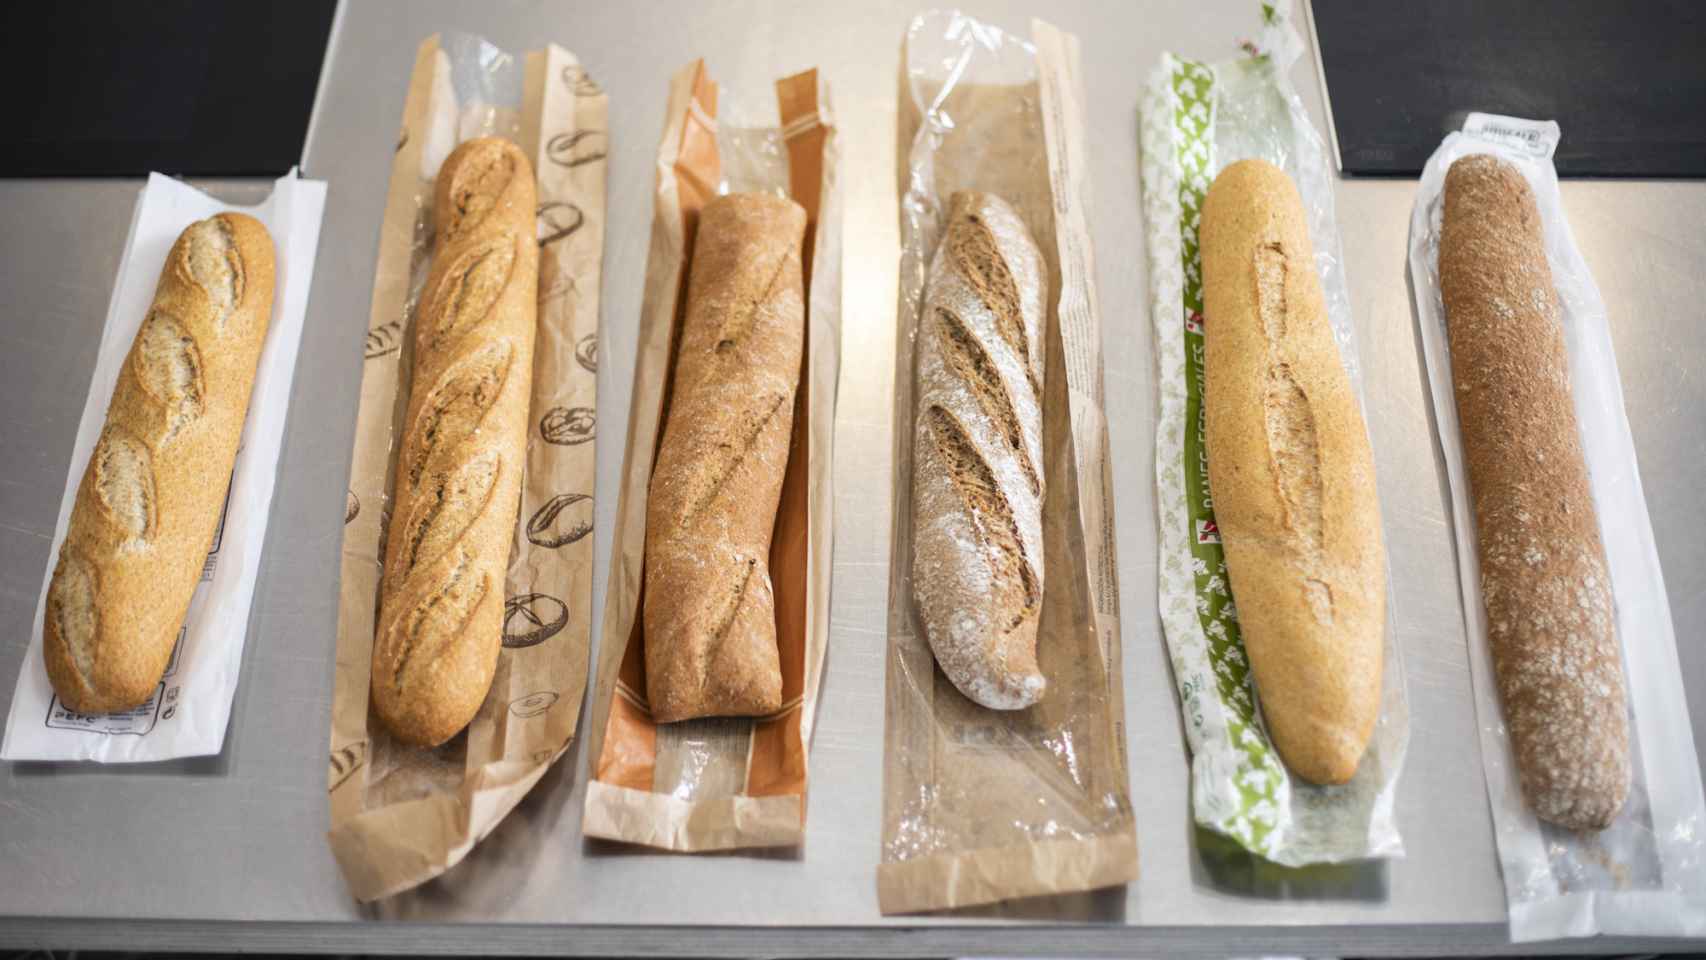 Las seis barras de pan integral de los supermercados testadas en la cata.